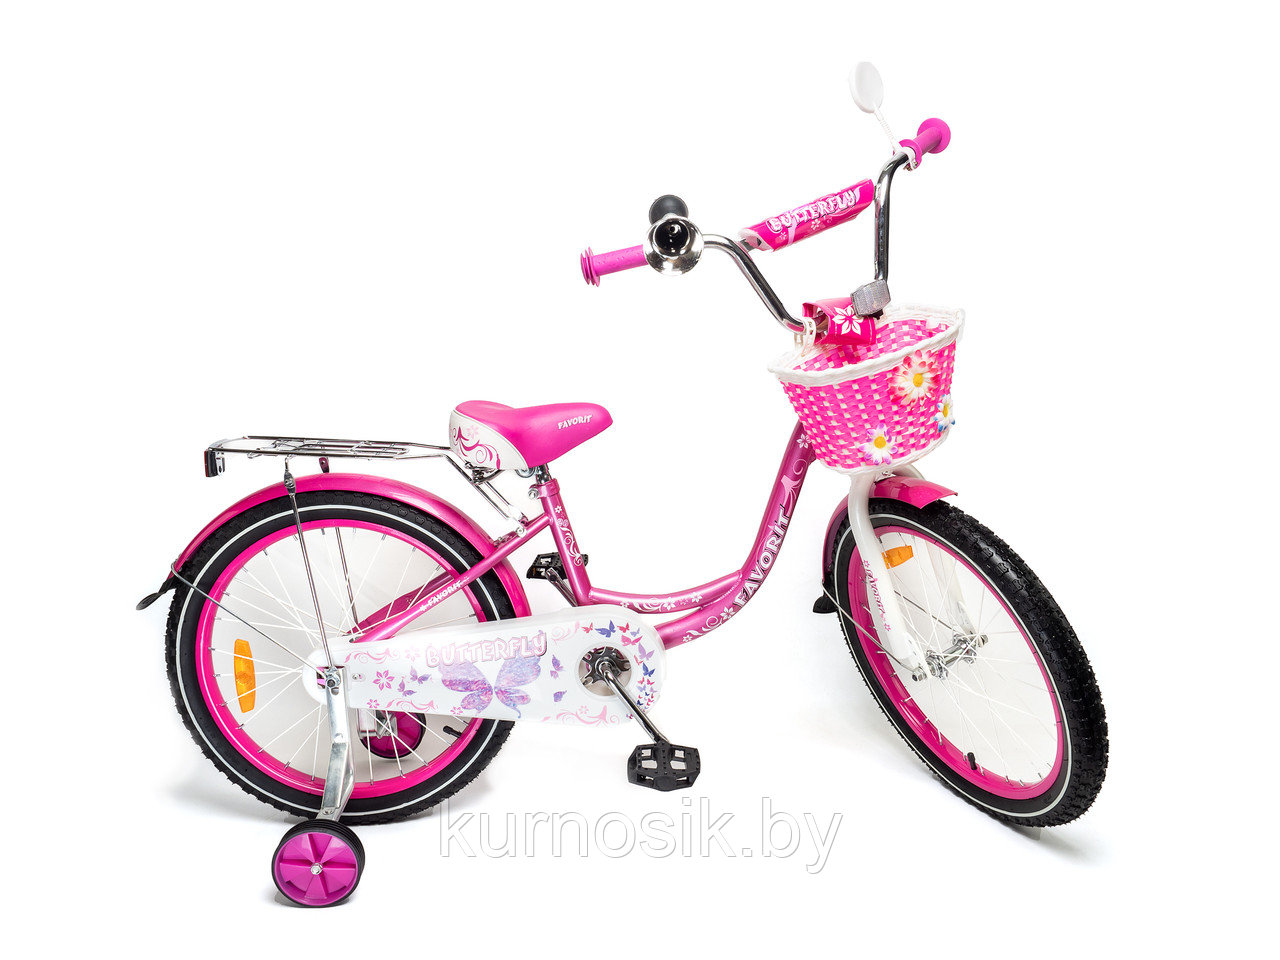 Детский двухколесный велосипед Favorit Butterfly 16" (4-6 лет) розовый, фото 1